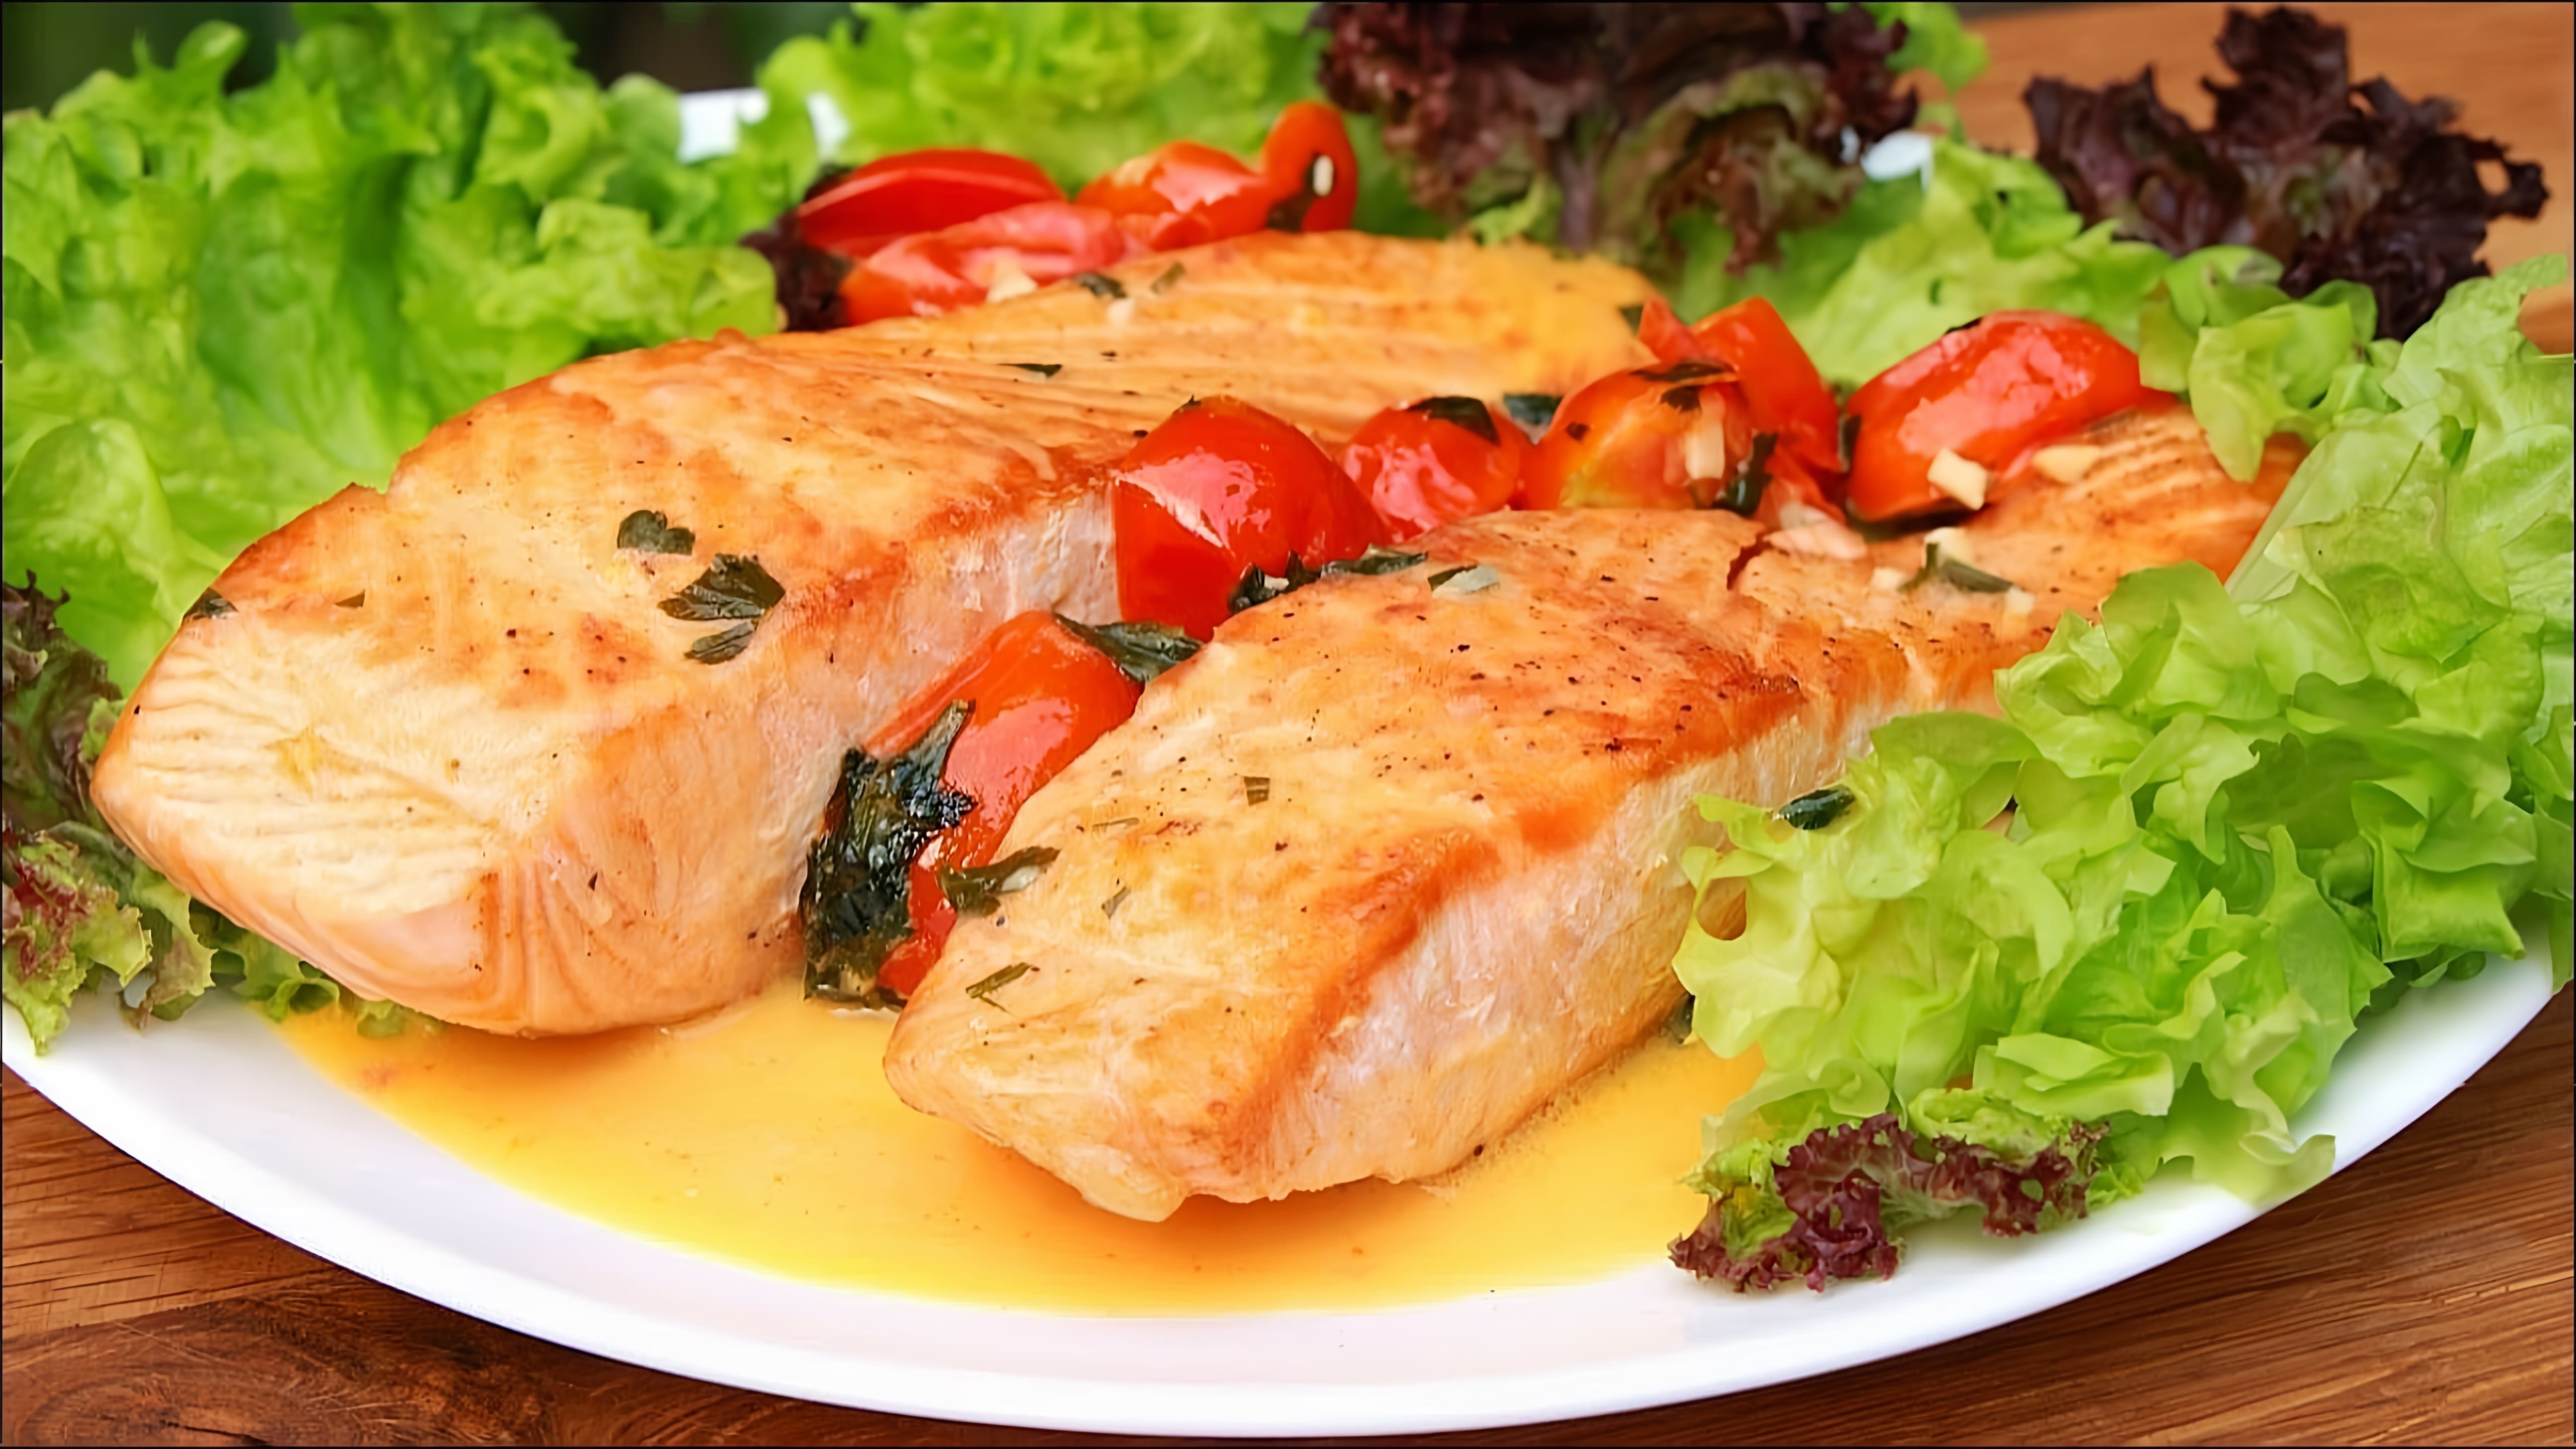 В этом видео демонстрируется процесс приготовления вкусного ужина из филе лосося с обалденным соусом